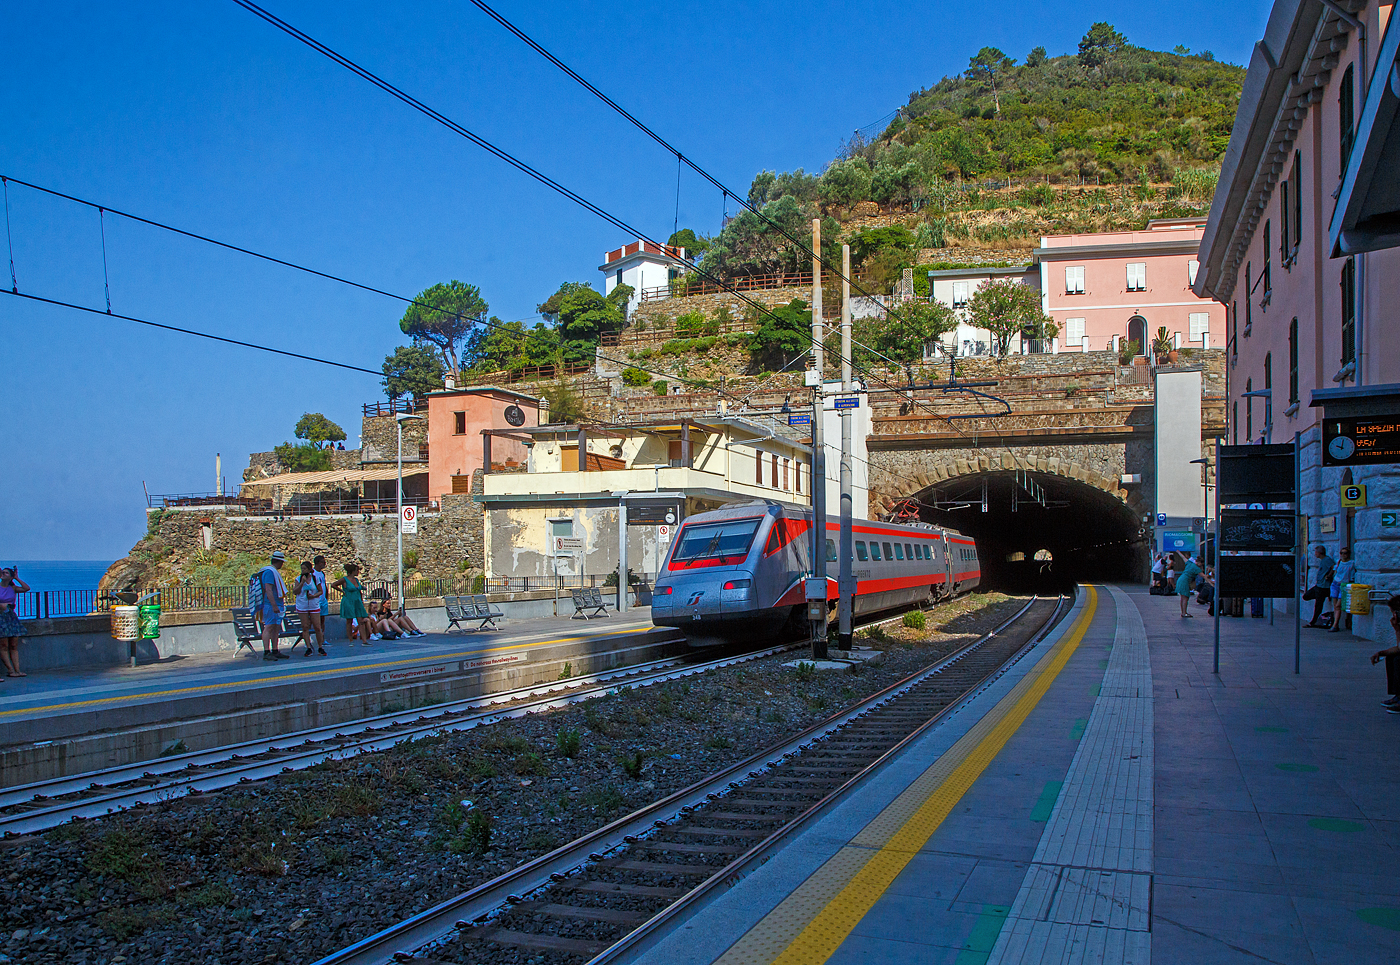 Der Trenitalia Frecciargento ETR 485 - 34 (Pendolino) fährt am 22.07.2022 durch den Bahnhof Riomaggiore in Richtung Genova.

Riomaggiore ist das südlichste der fünf Dörfer der Cinque Terre (Fünf Ortschaften) und verfügt, wie die anderen Dörfer, über einen Bahnhof an der Bahnstrecke Pisa–Genua (RFI Strecke-Nr. 77 / KBS 31 La Spezia–Genua), die den Ort mit den Nachbardörfern und mit La Spezia und Levanto verbindet. Der Bahnhof von Riomaggiore liegt am nordwestlichen Ortsrand, nur drei bis vier Wagenlängen befinden sich unter freiem Himmel, der Rest der Bahnsteige ist in den beiden Tunneln (davor und dahinter). Der Ortskern wird mittels eines in einem Eisenbahntunnel verlaufenden Fußpfades angebunden.

Hier mit Blick auf den nördlichen Tunnel (in Richtung Levanto). Rechts das Empfangsgebäude. Rechts und links vom Tunnelportal die Aufzüge (Lifte) vom einen zum anderen Bahnsteig für den barrierefreien Übergang. Es gibt auch eine Unterführung mit Treppen. 

Man kann auch mit dem Lift über den Tunnel fahren und geht dann nach links wo dann die Via dell'Amore beginnt. Dies ist ein in den Fels gehauener Fußweg zum nahe gelegenen Manarola, mit malerischen Aussichten (gegenwärtig aber gesperrt).